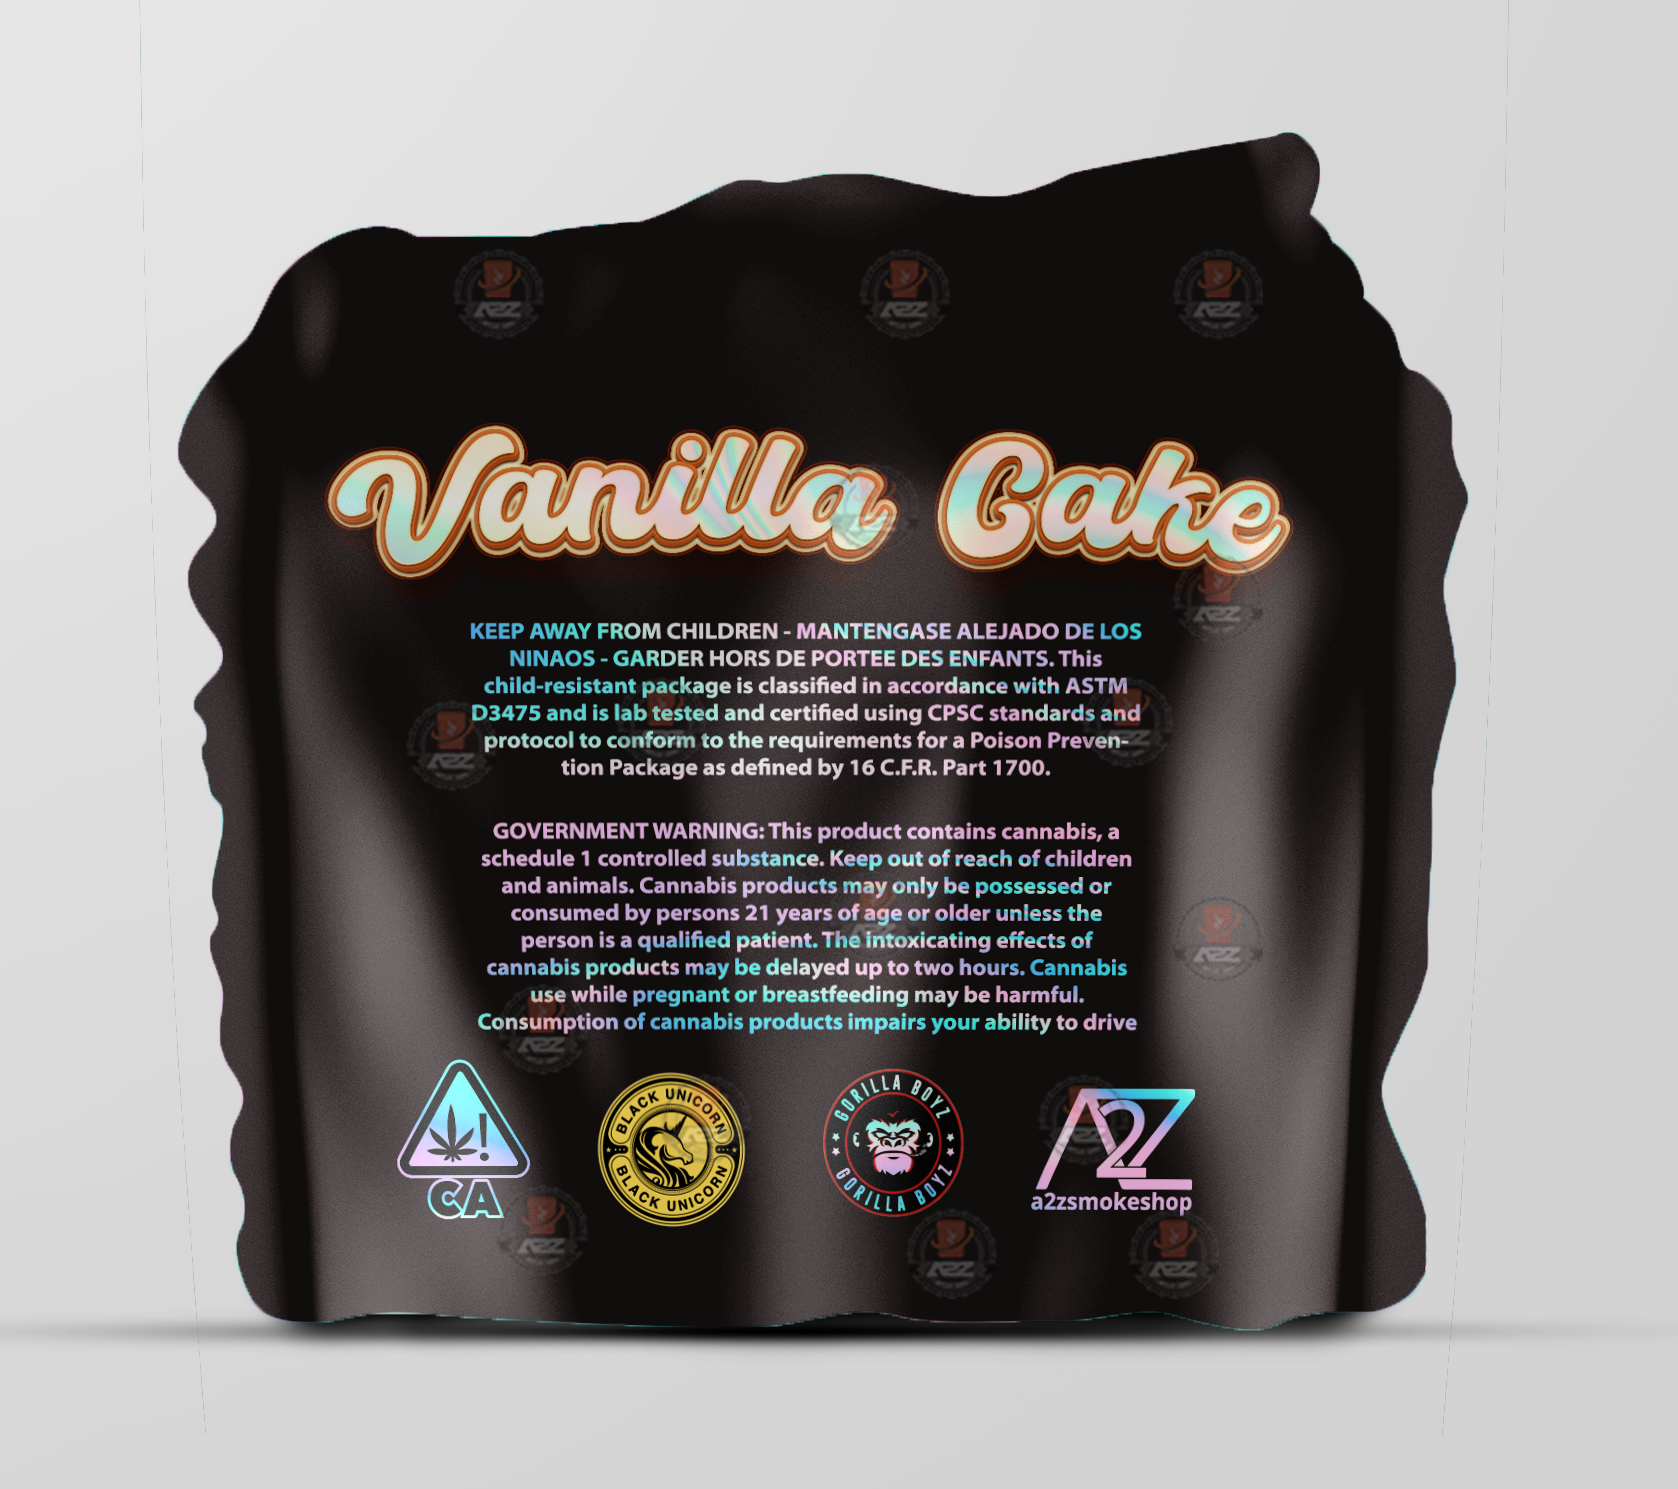 Black Unicorn Vanilla Cake cut out Holographic Mylar bag 3.5g